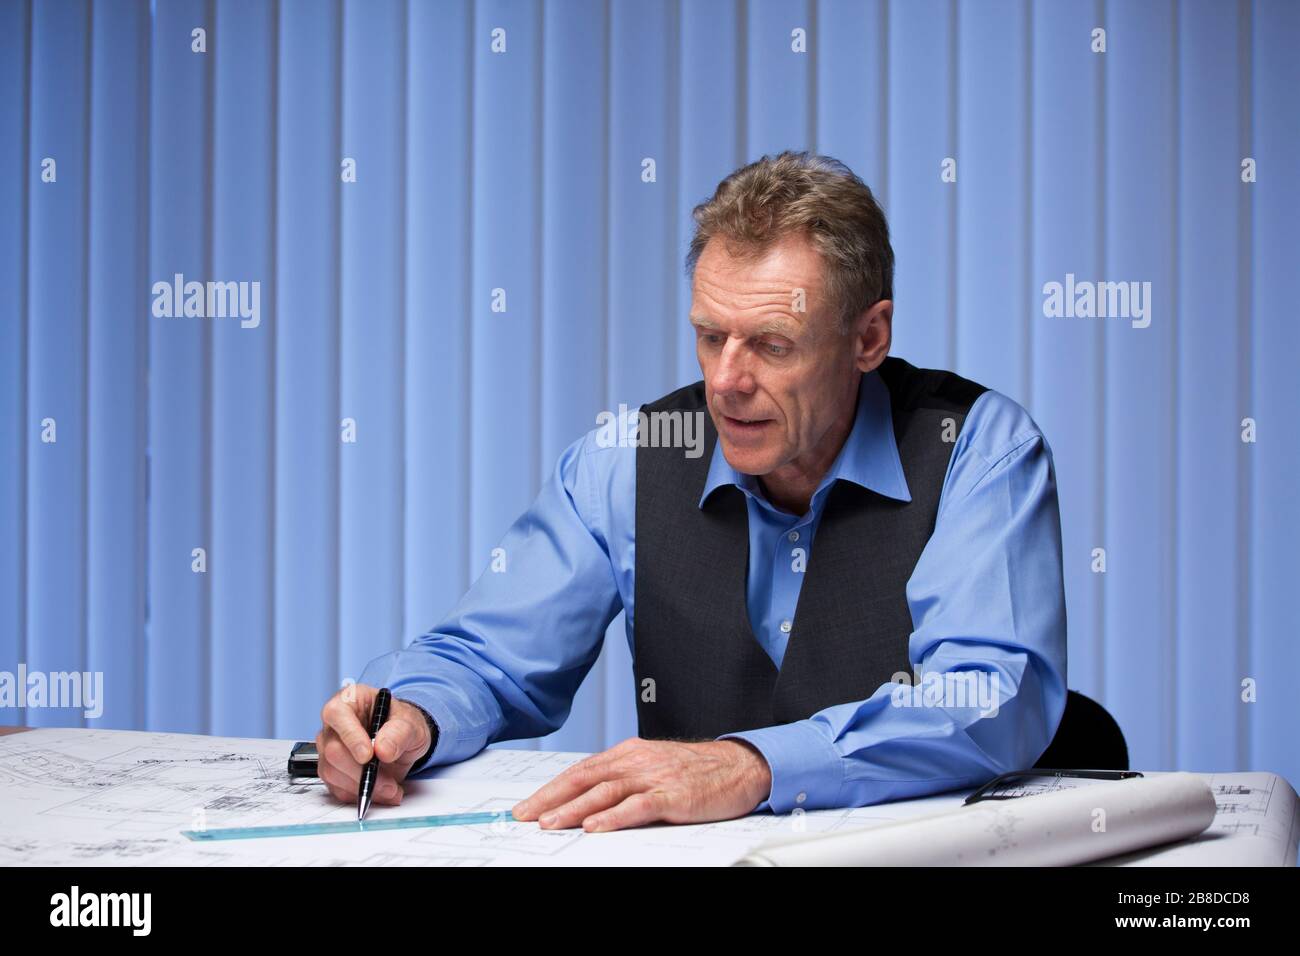 Reifer Architekt oder Ingenieur, der an einem Schreibtisch mit einem Plan mit blauem Bürohintergrund sitzt Stockfoto